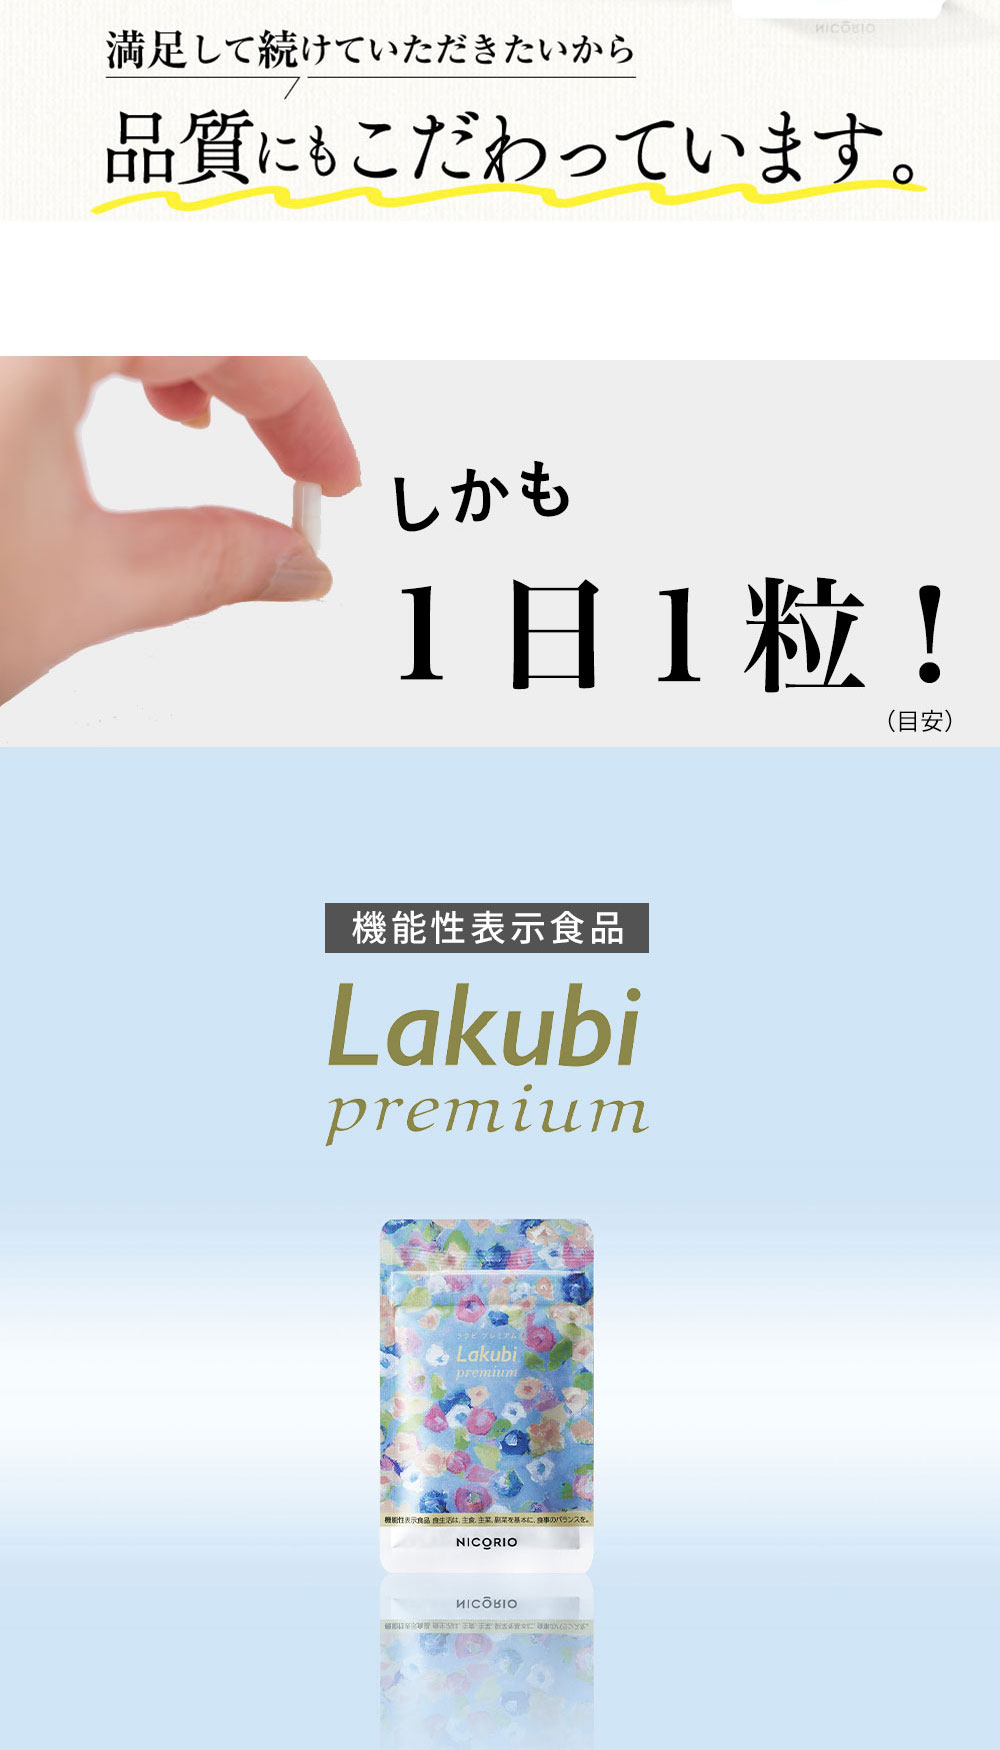 【公式】Lakubi premium ラクビ プレミアム 機能性表示食品 